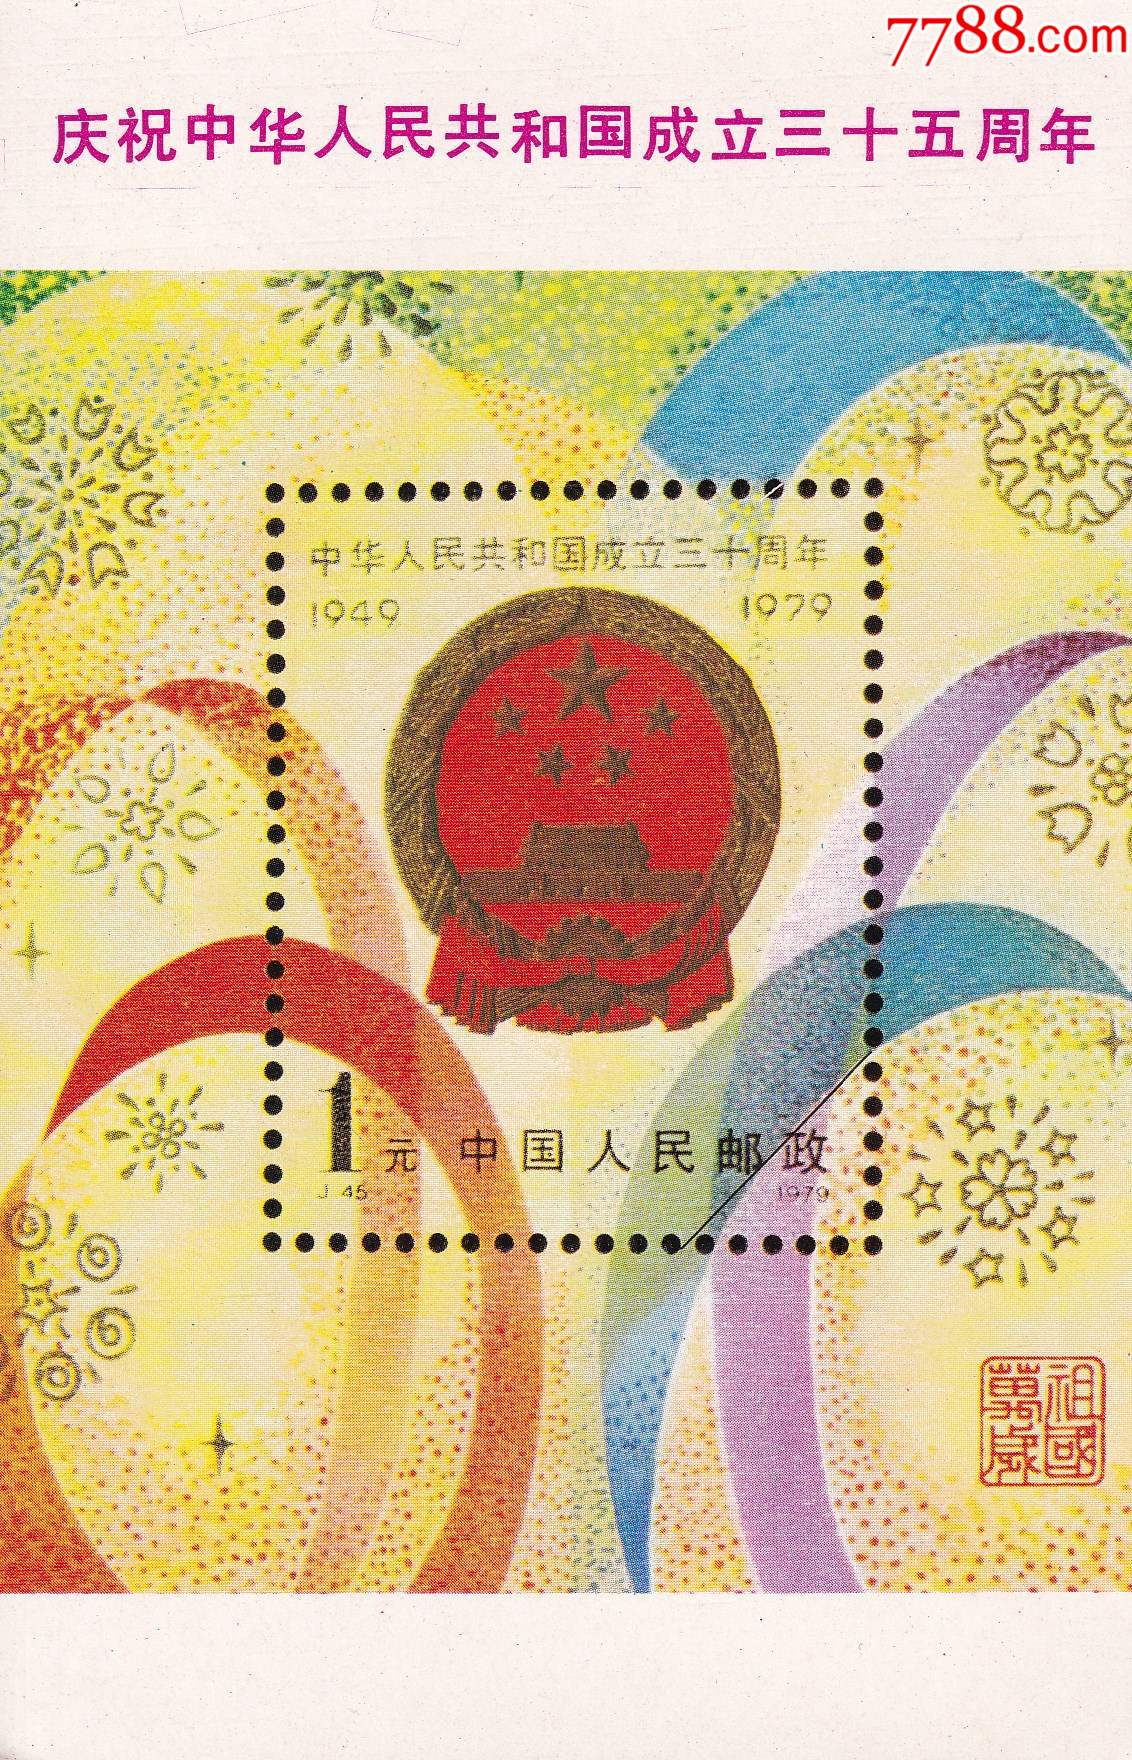 1979年邮票目录及图片图片